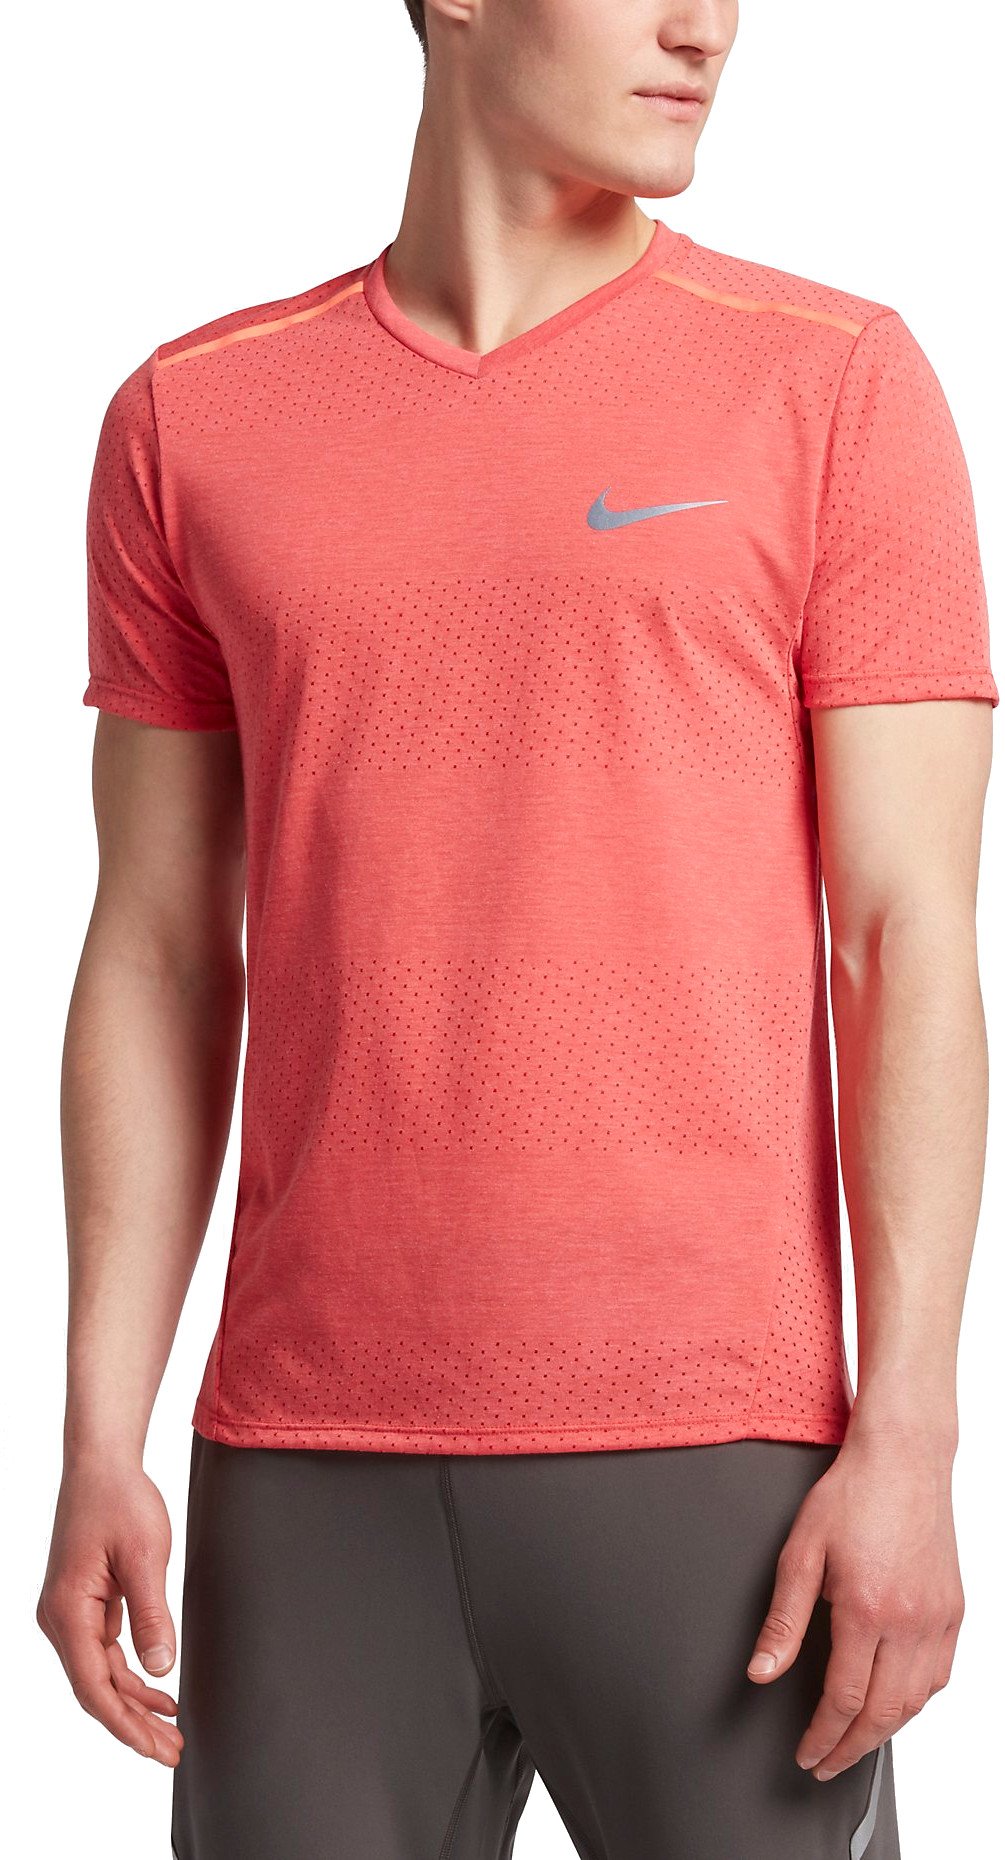 T-shirt Nike NK BRTHE TOP SS TAILWIND - Top4Running.com